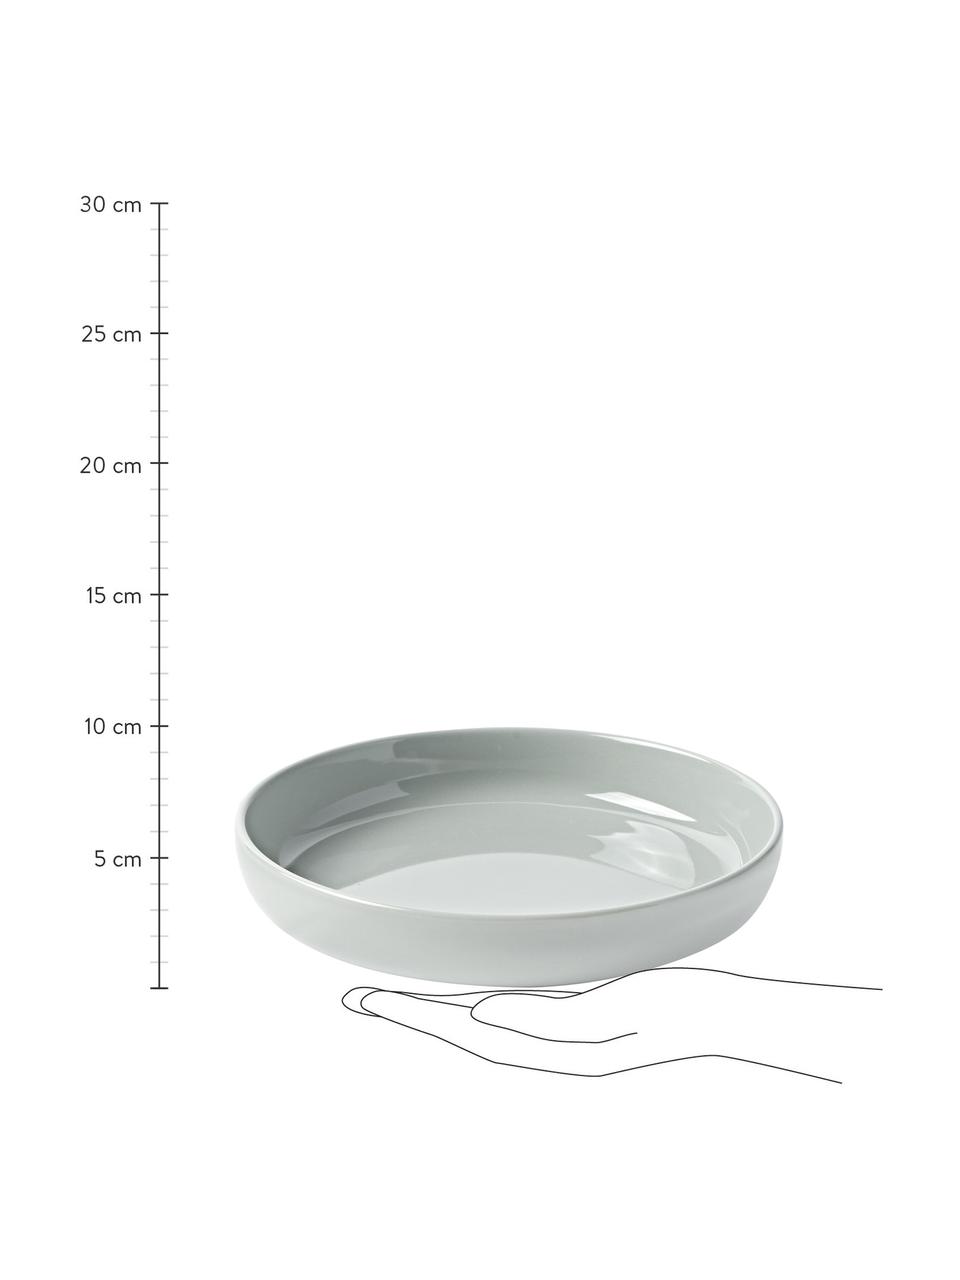 Assiettes creuses en porcelaine Nessa, 4 pièces, Porcelaine dure de haute qualité, Gris clair, Ø 21 cm